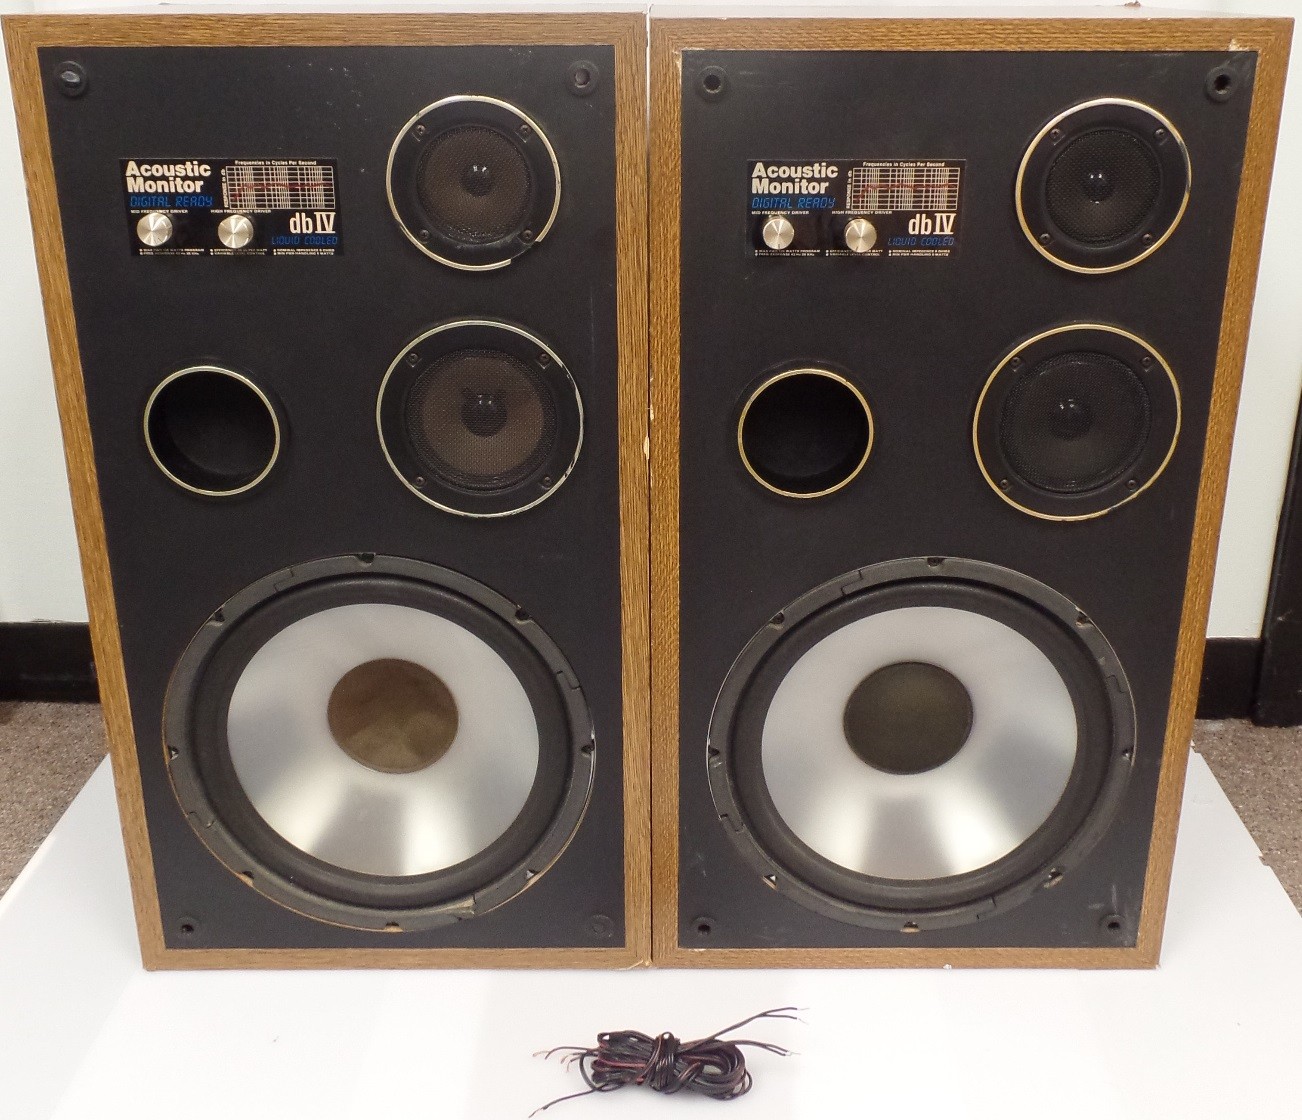 One pair (2 speakers) Acoustic Monitor Digital Ready Speakers dbIV 